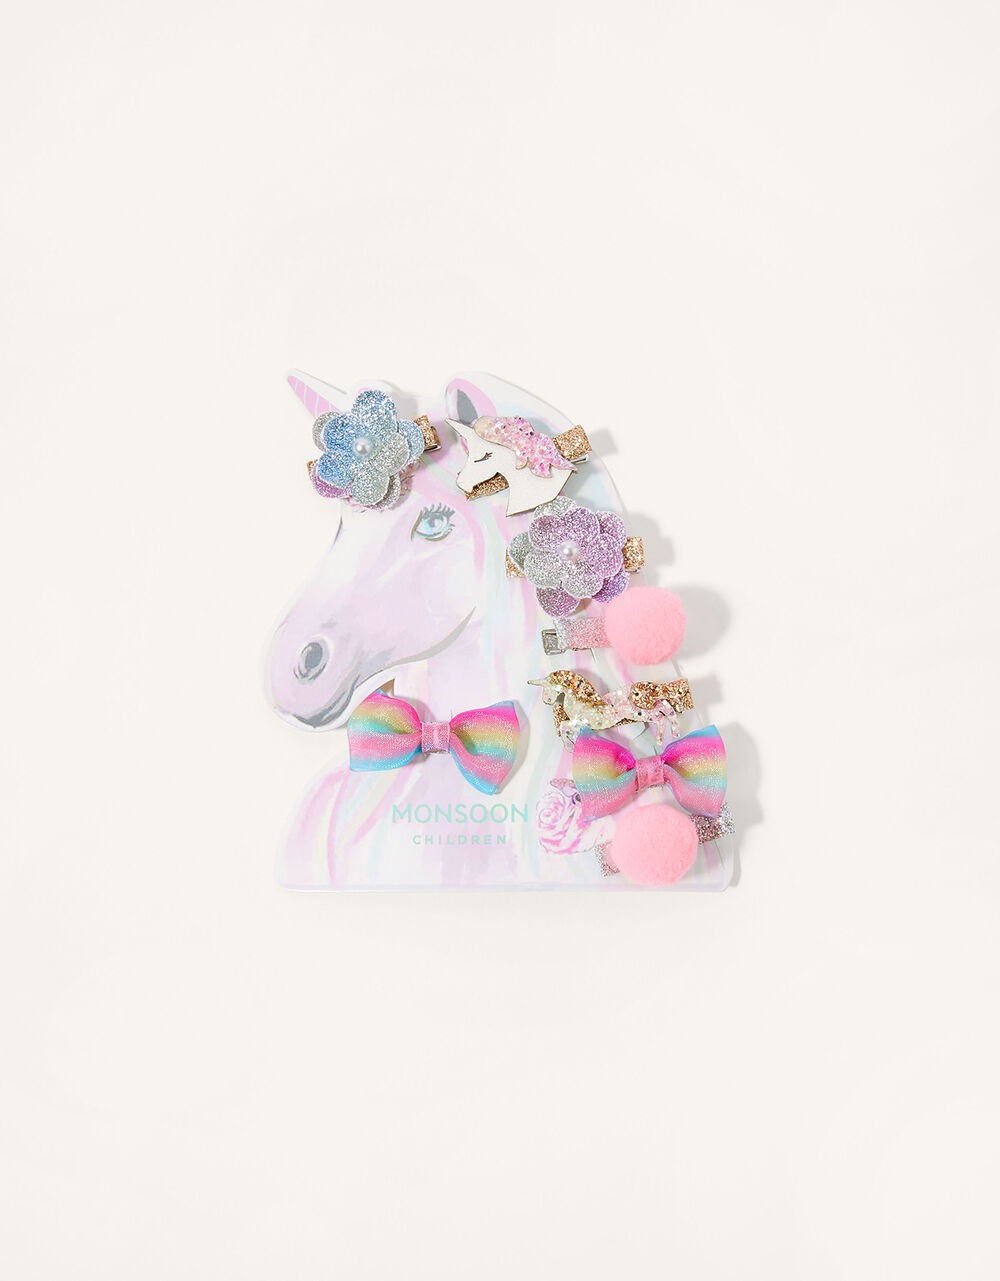 Children Children's Accessories | Unicorn Pom Pom Hair Clip Set - DH58985